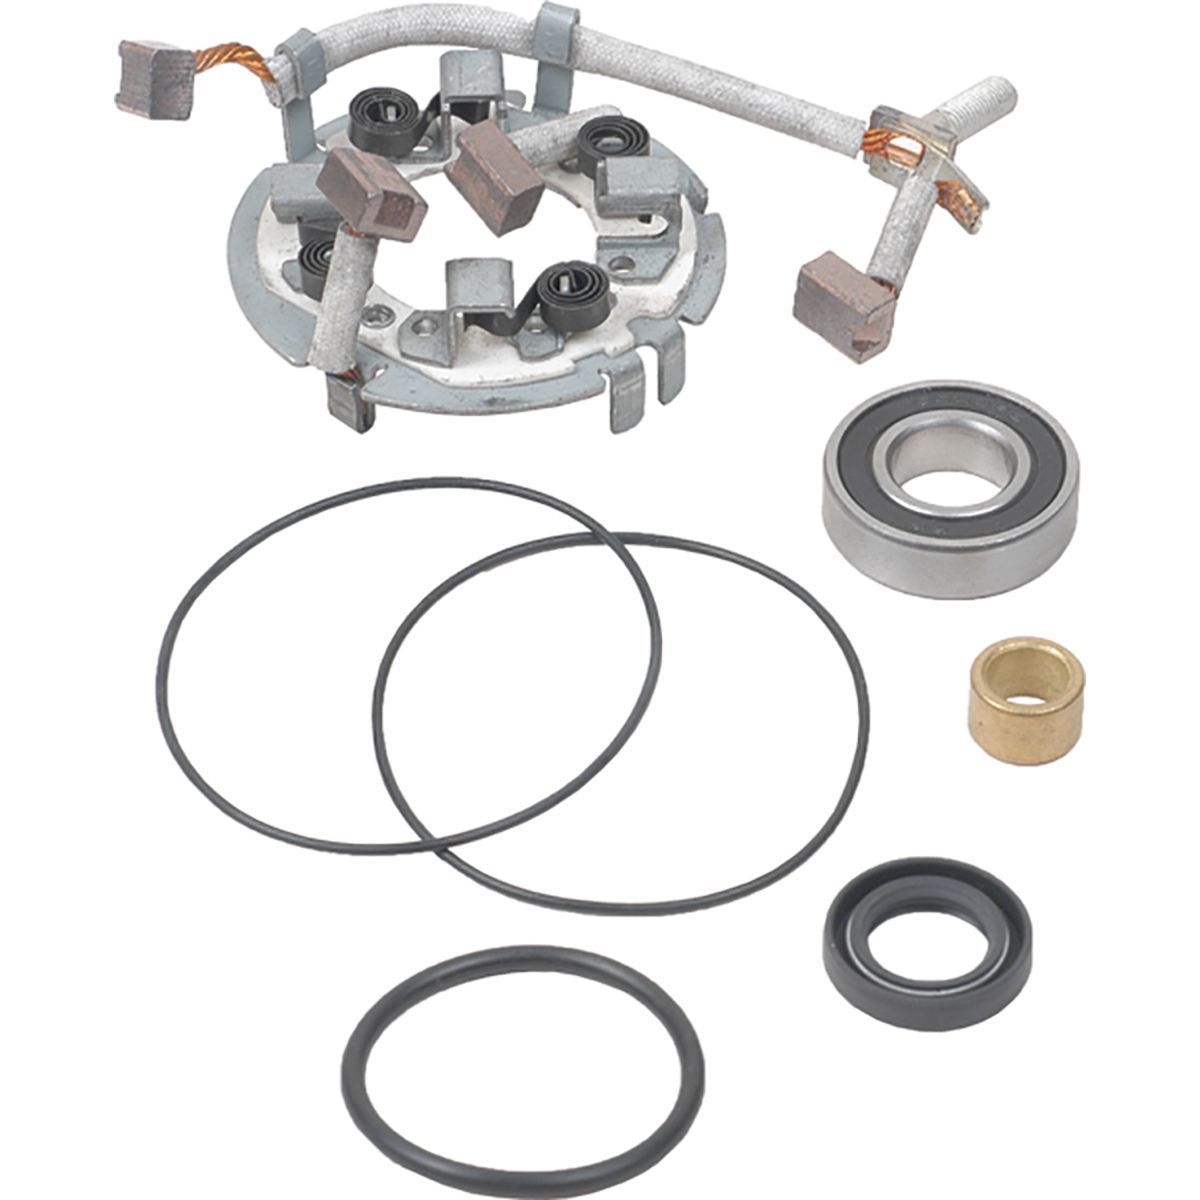 Obrázek produktu Parts kit ARROWHEAD 414-52011 (brush holder)